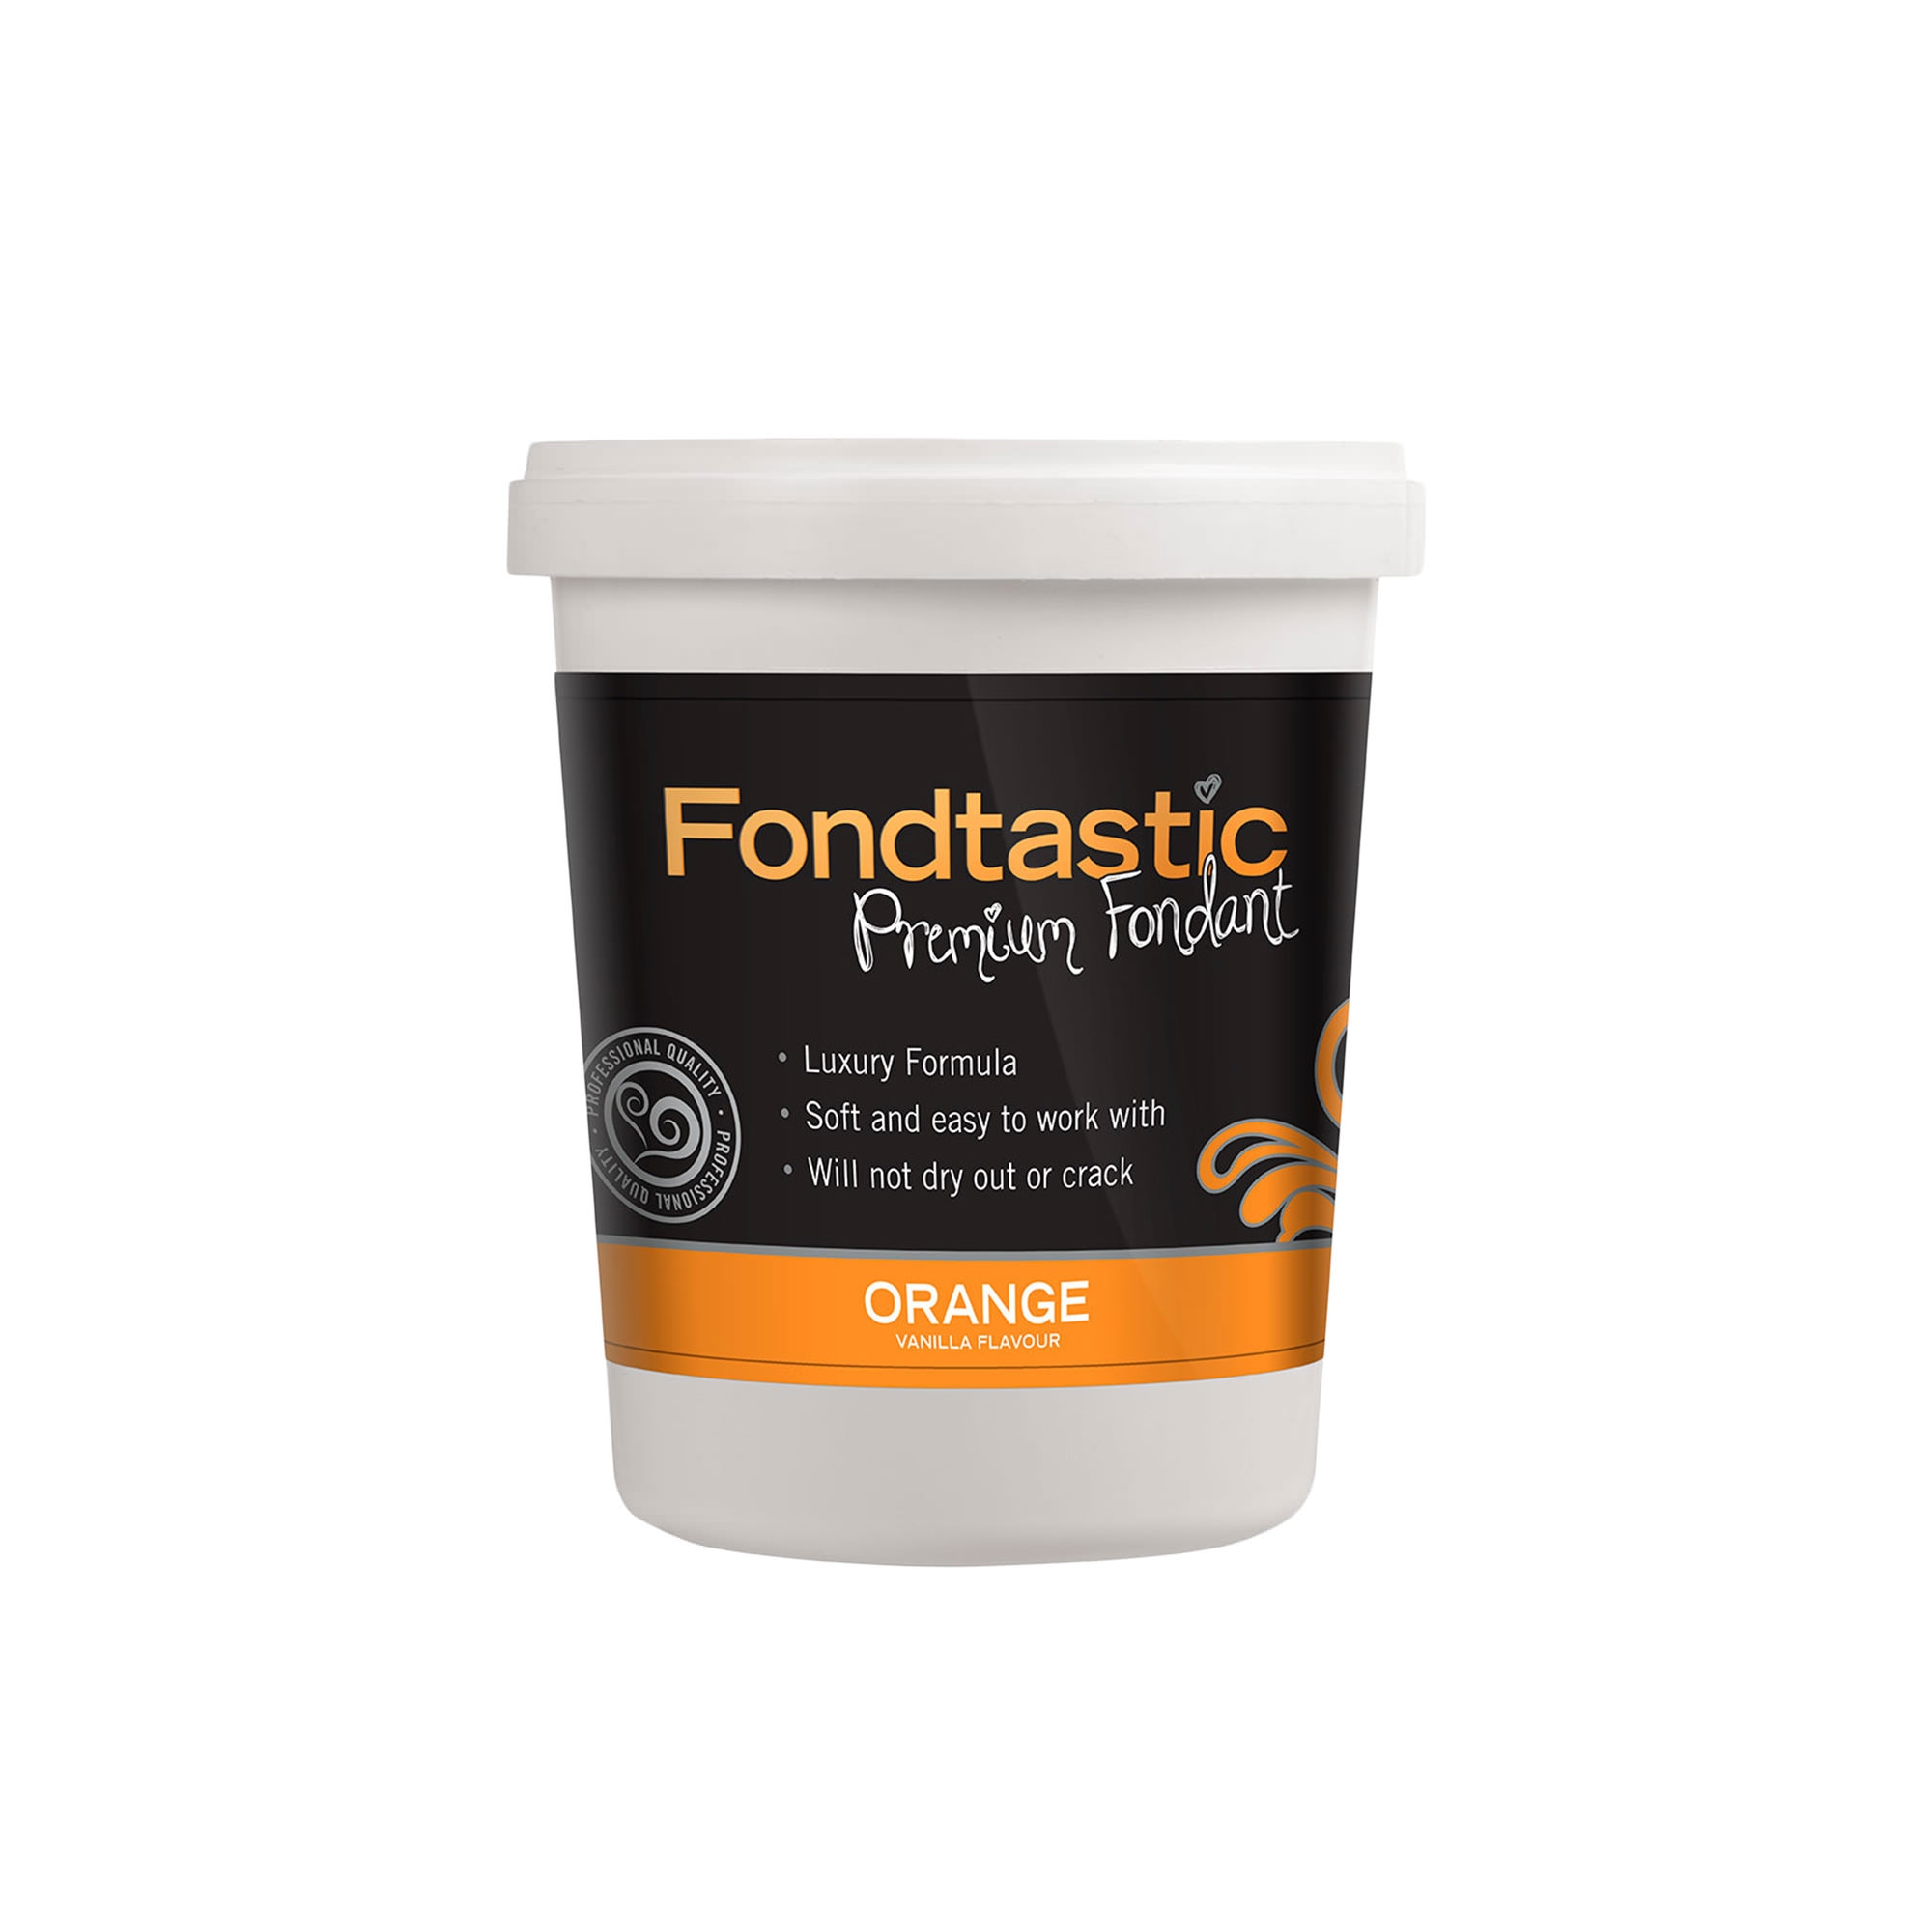 Fondtastic Premium Vanilla Flavoured Fondant Orange 908g Image 1